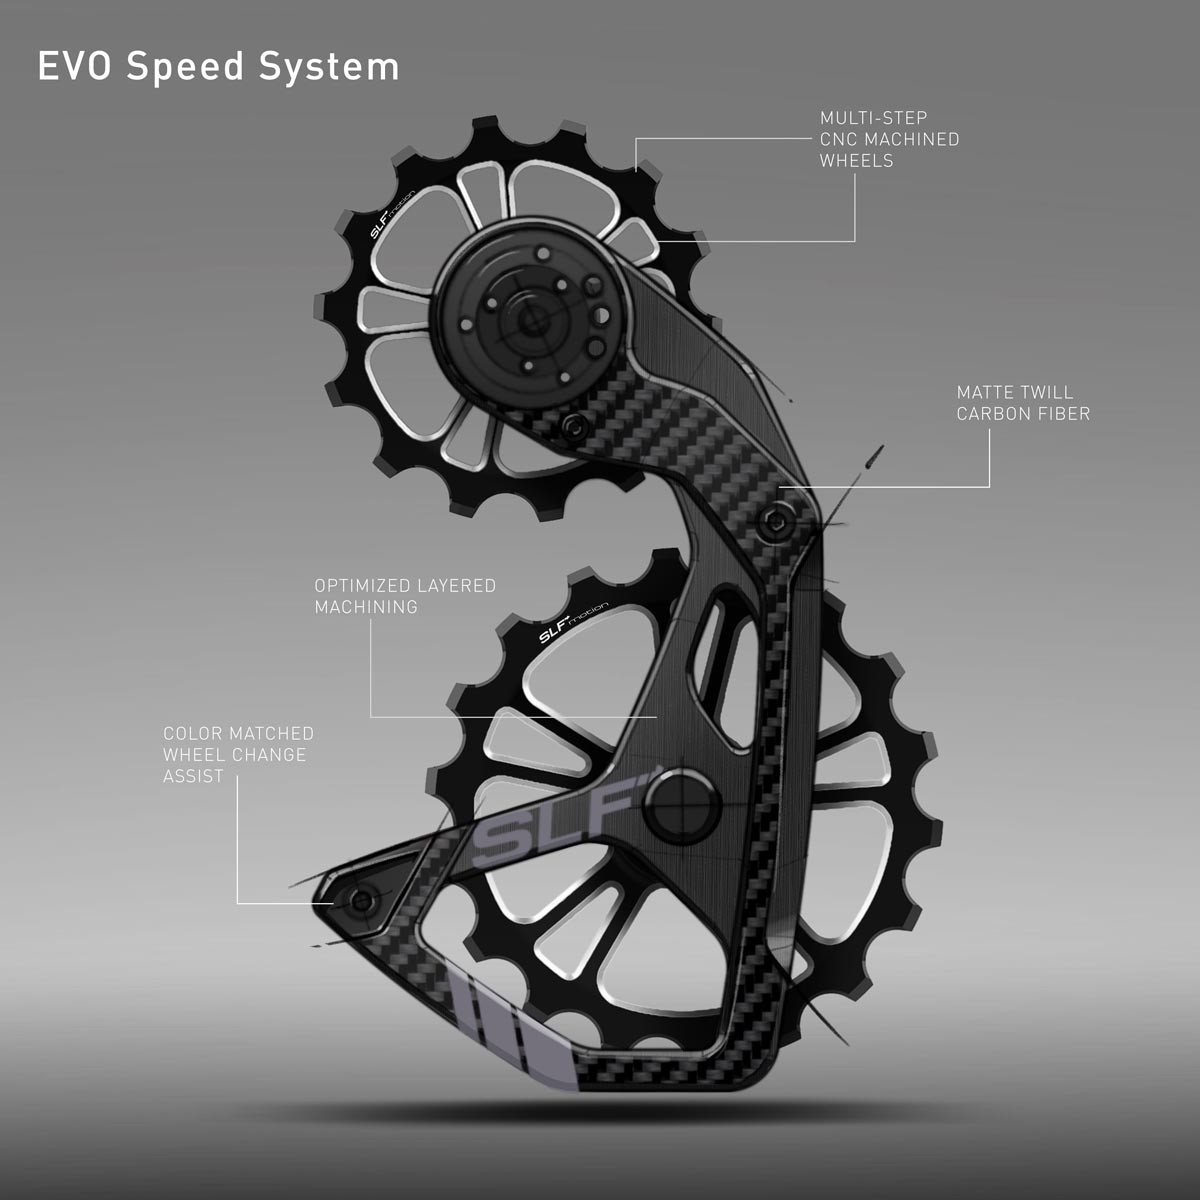 EVO Speed System details